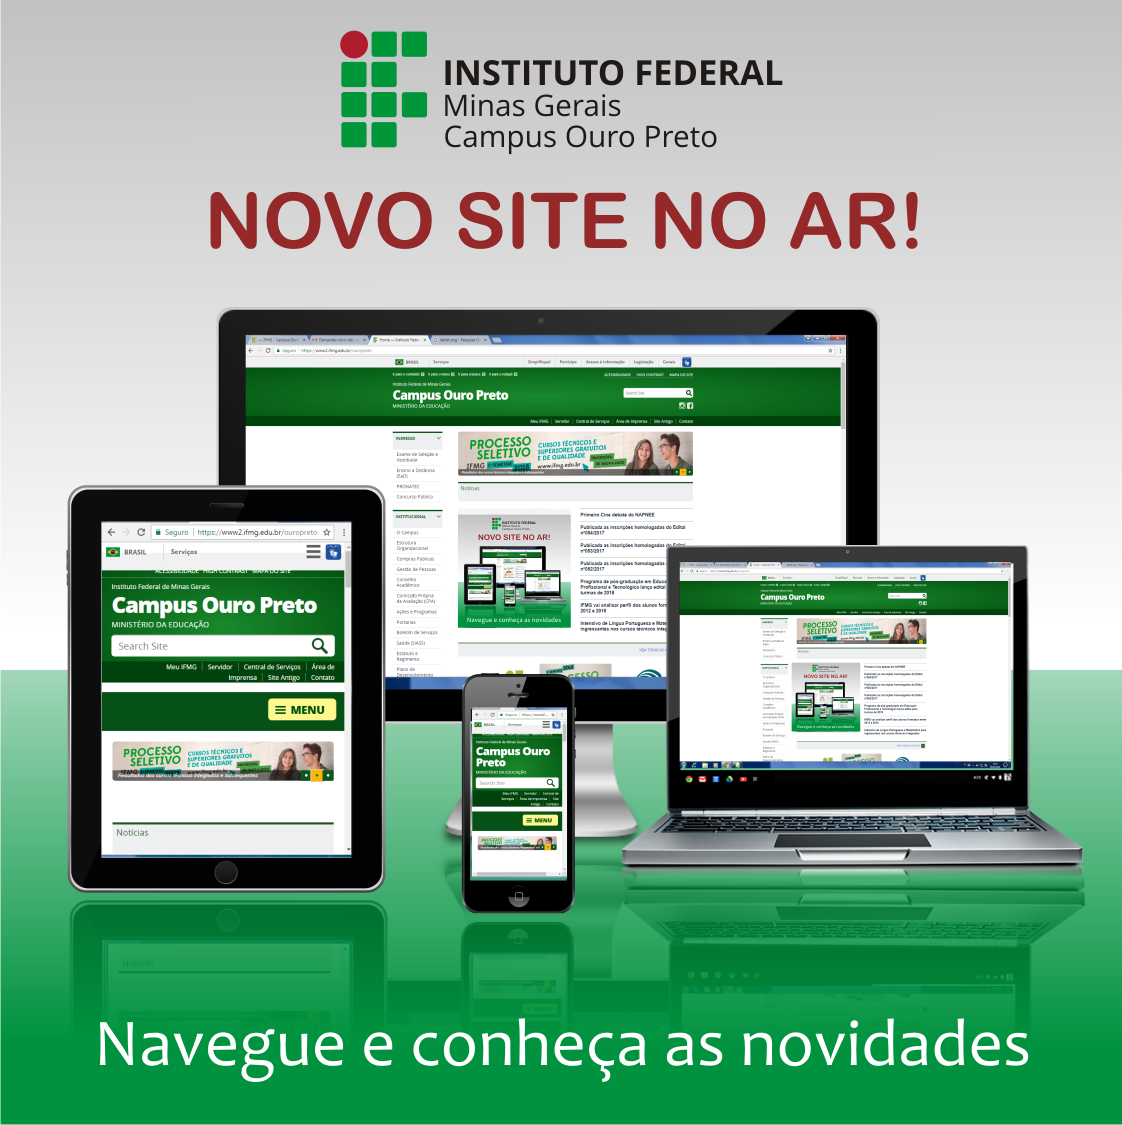 Noso site Campus Ouro Preto